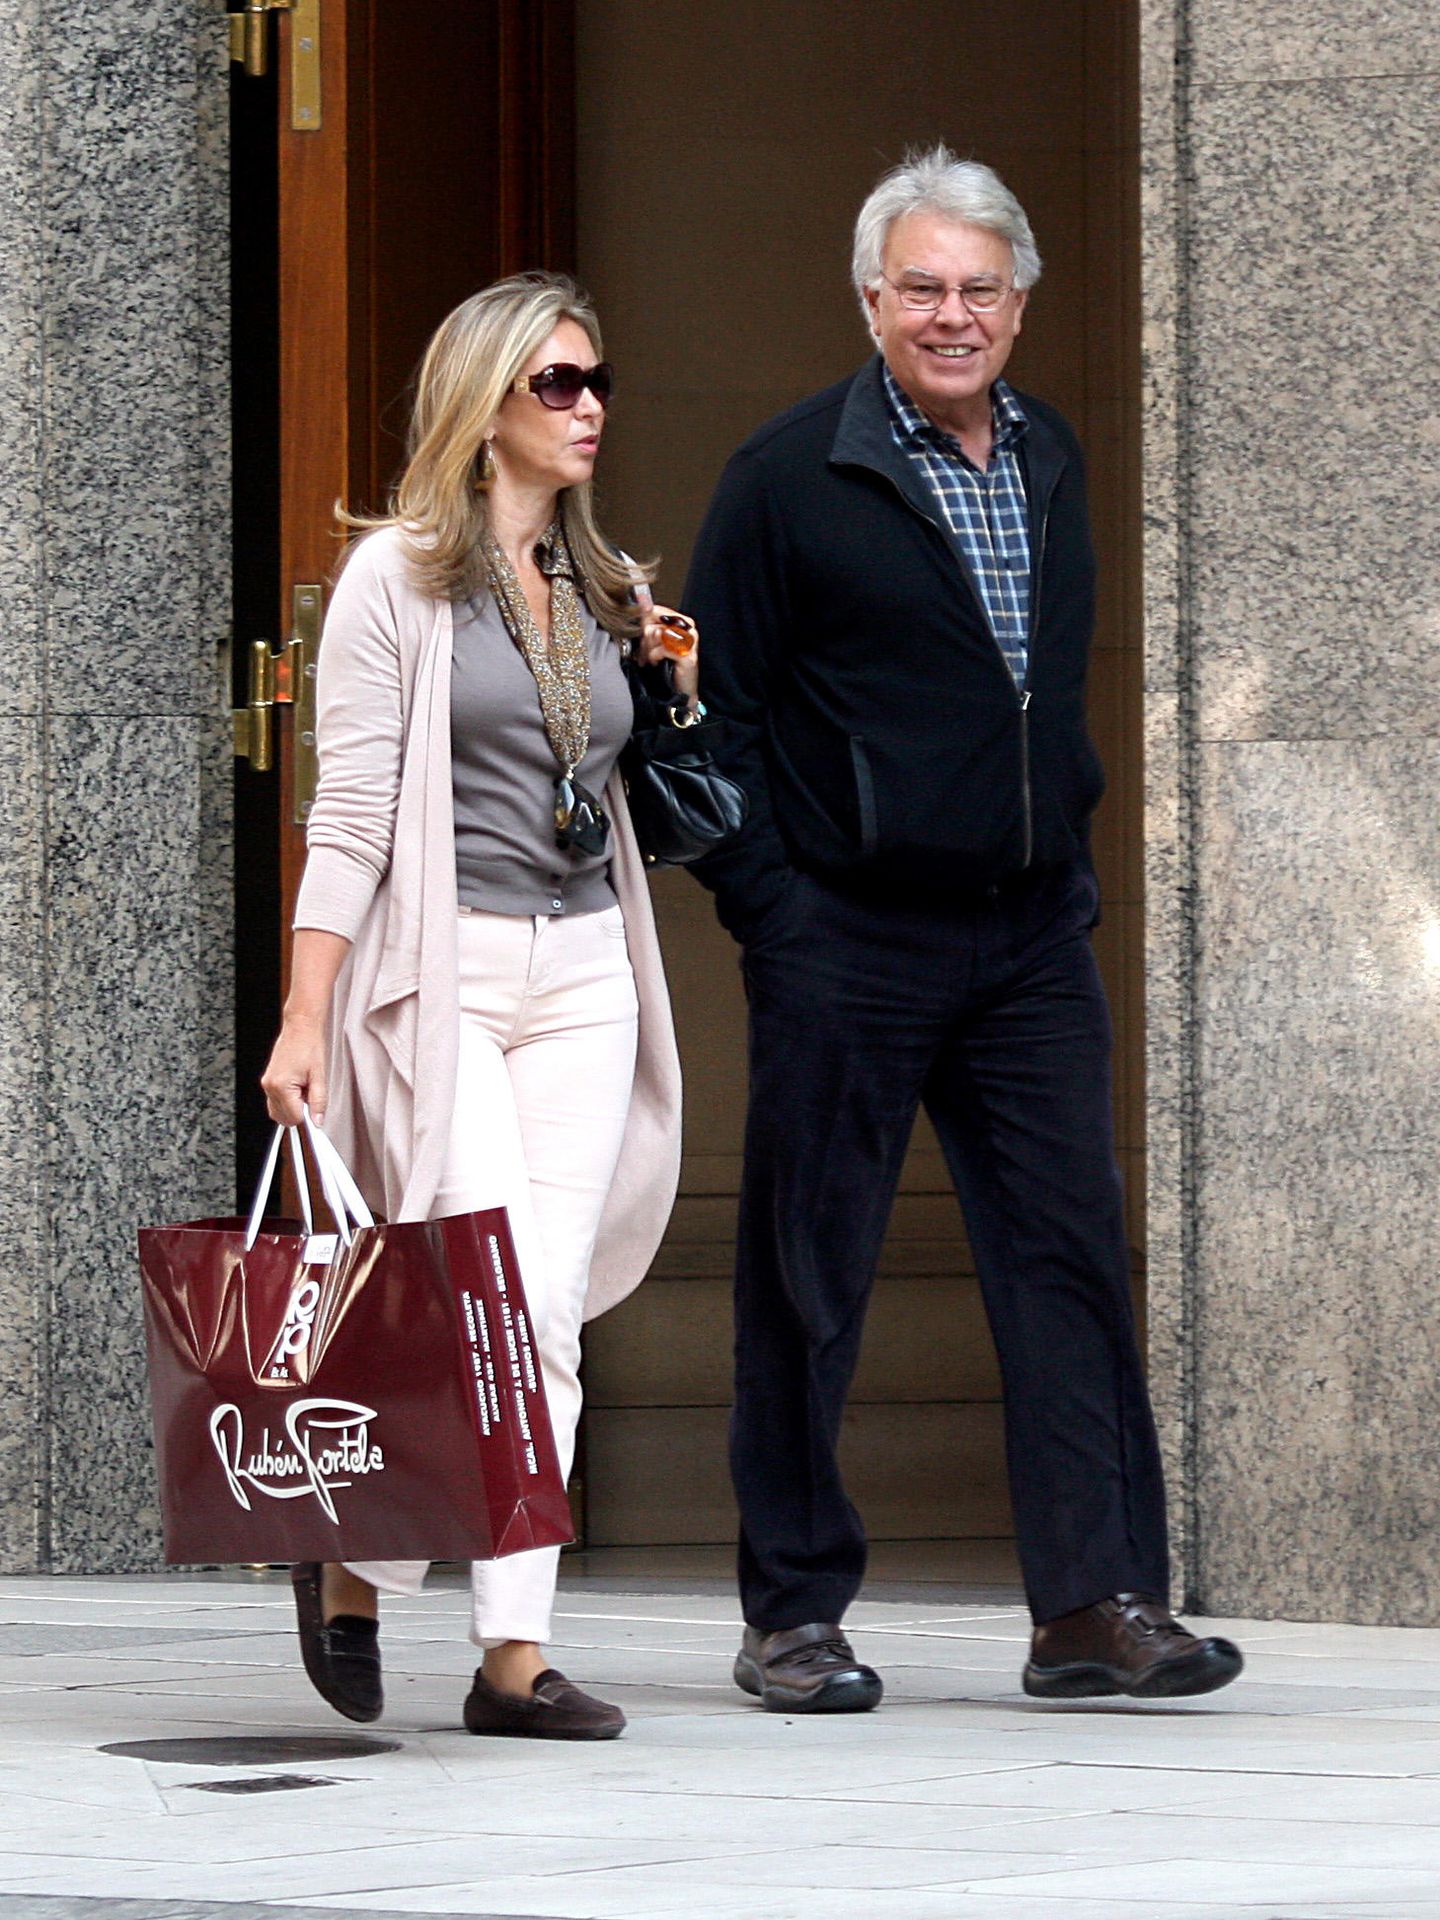 El expresidente Felipe Gonzalez y su mujer, María del Mar García Vaquero, paseando. (Gtres)